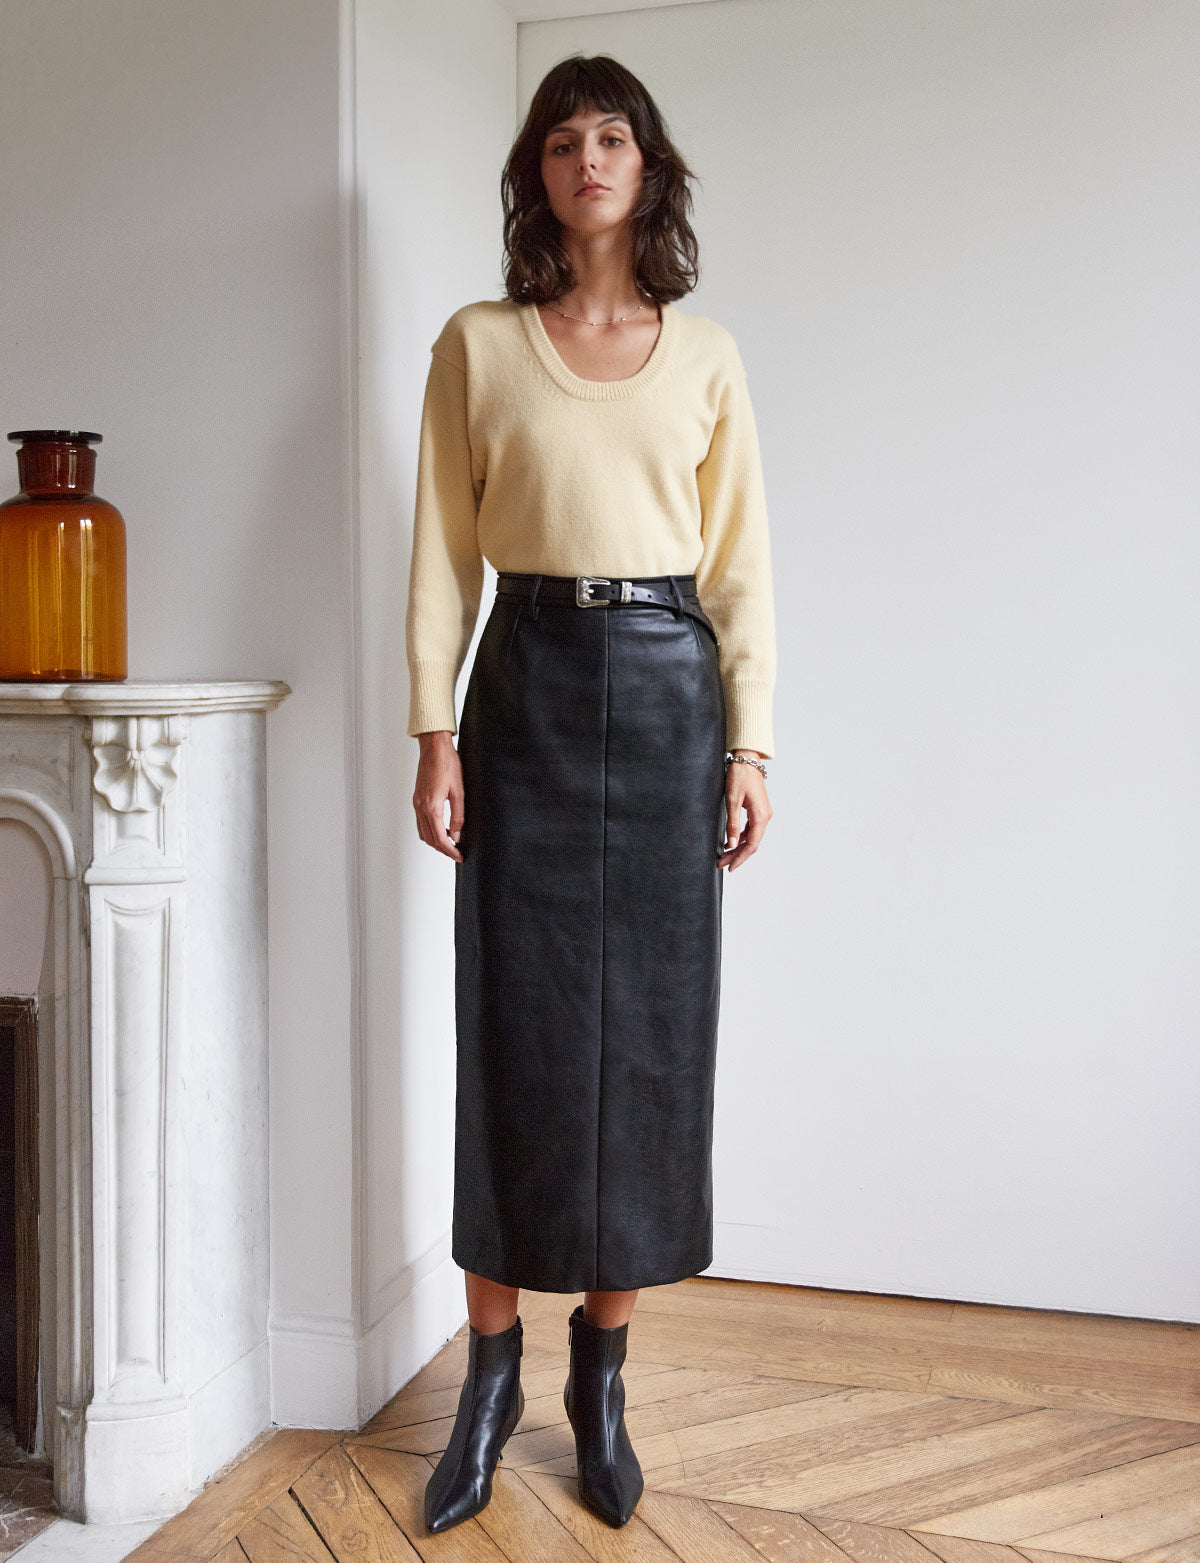 Chic Brown Skirt - Vegan Leather Skirt - High-Rise Midi Skirt - Lulus